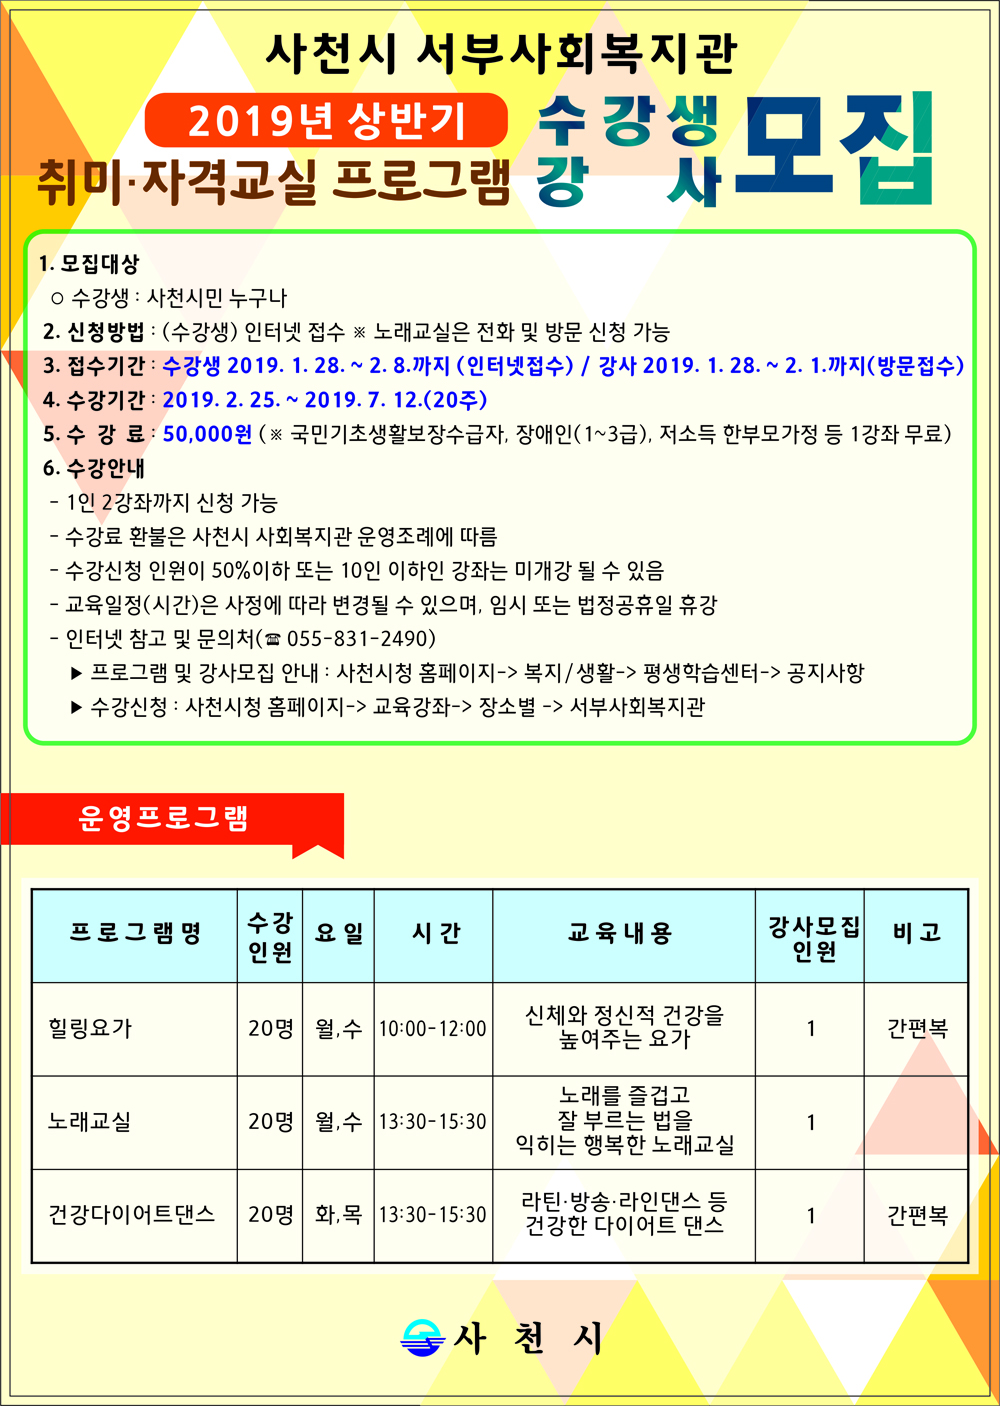 사천시 서부사회복지관 2019년 상반기 취미, 자격교실 프로그램 수강생 강사 모집 